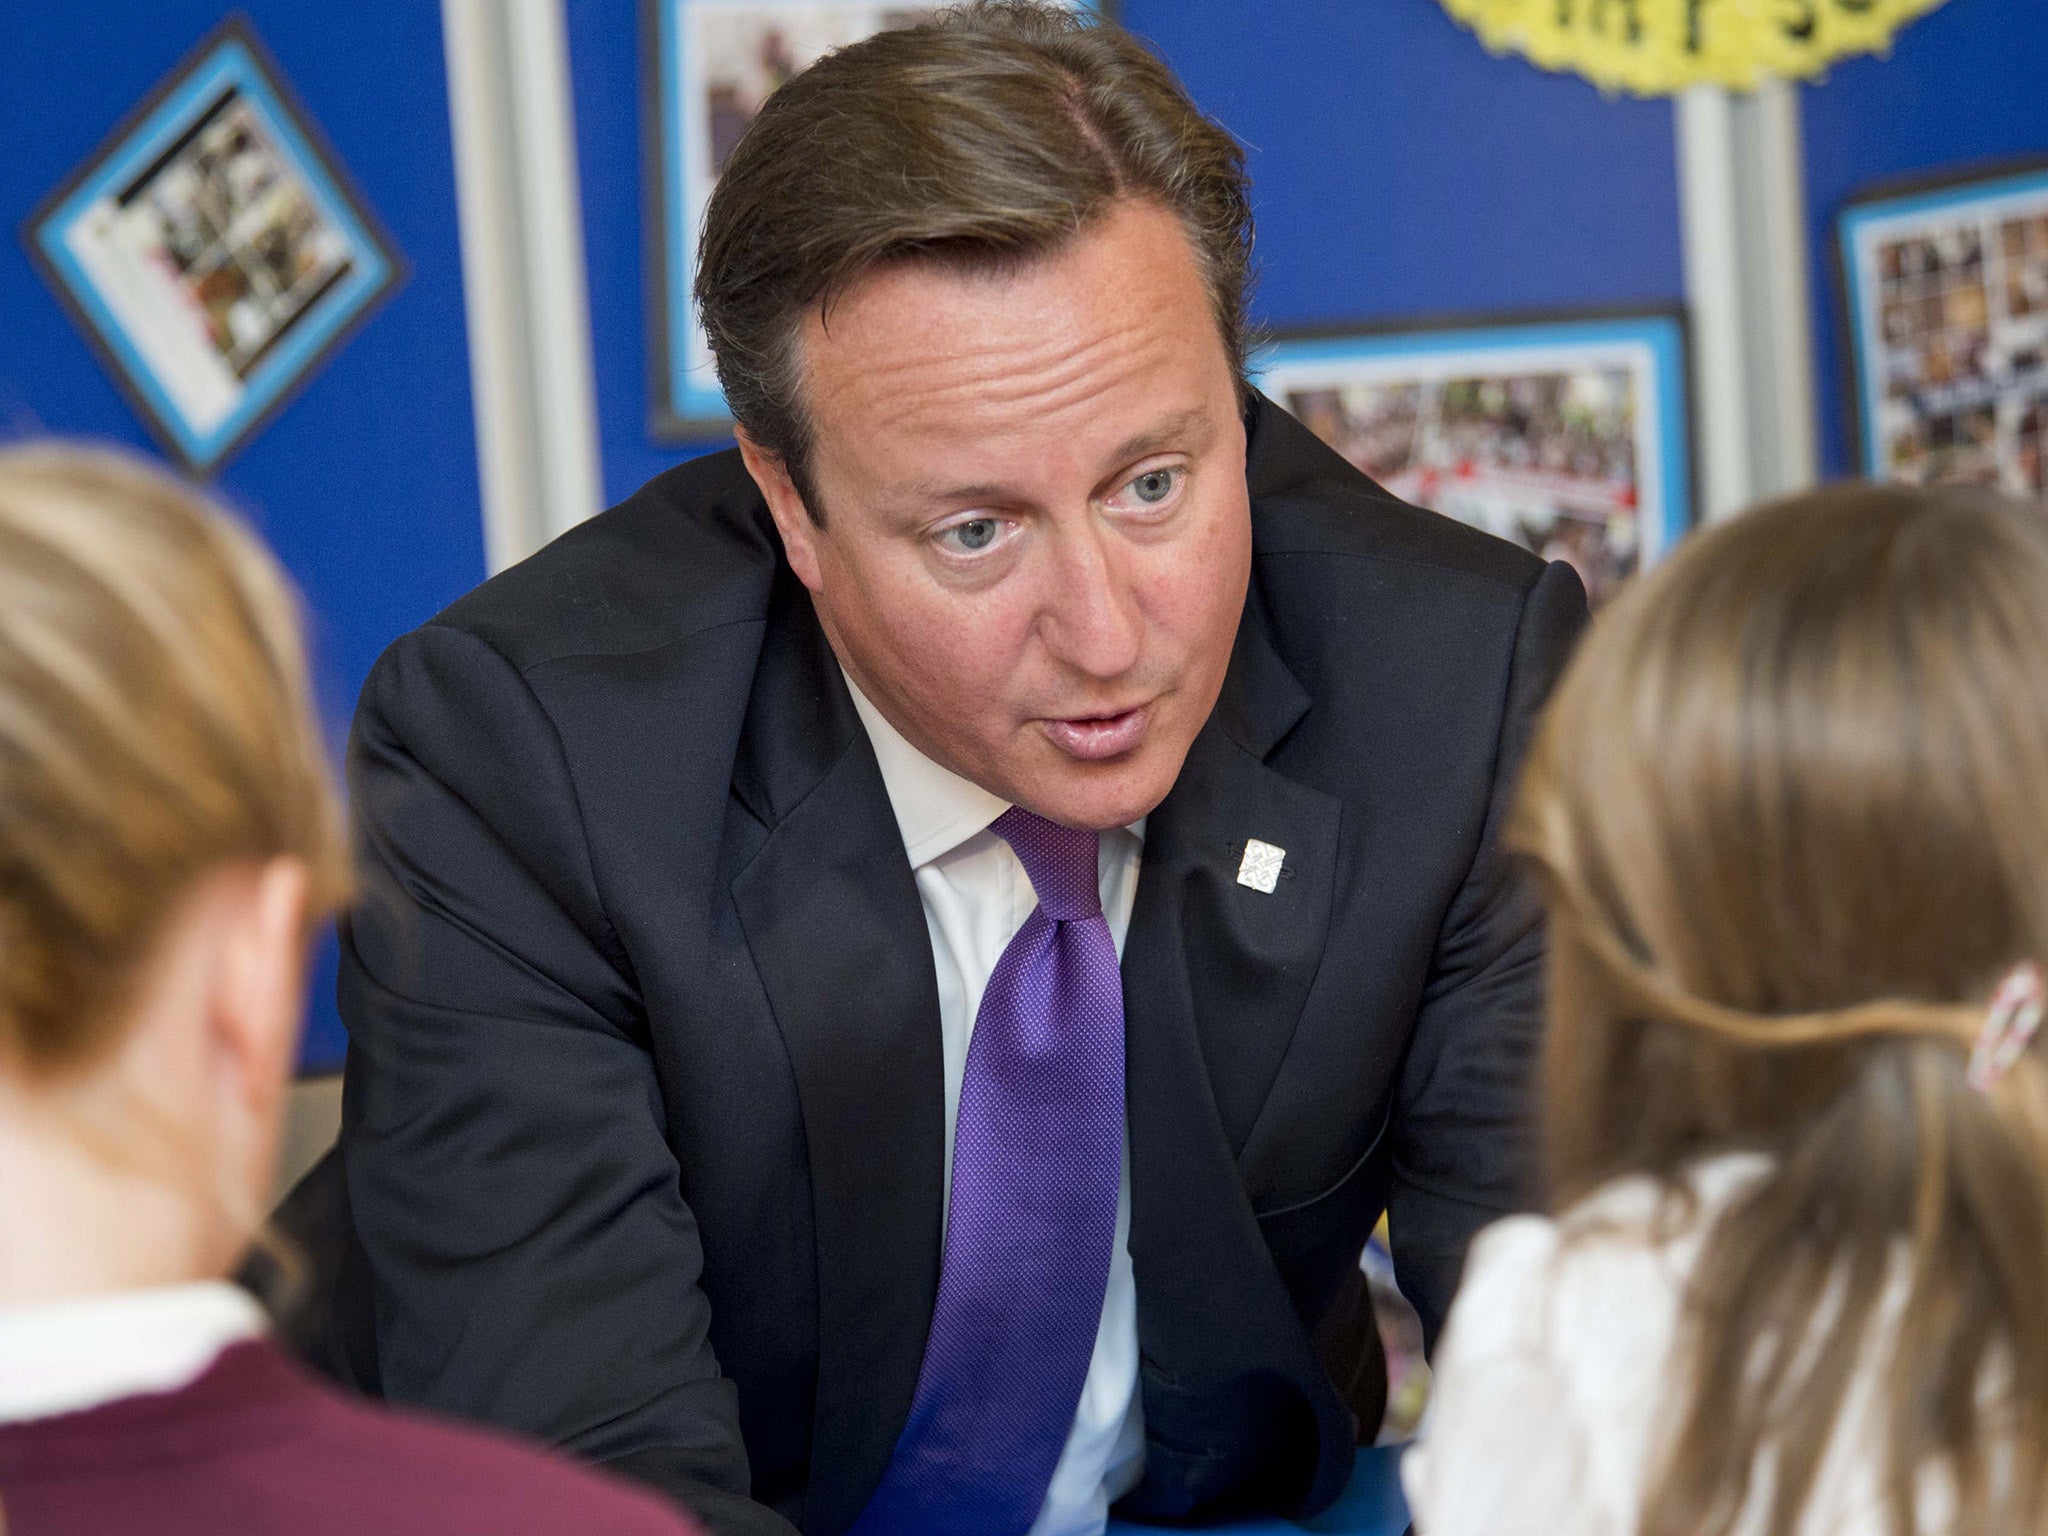 David Cameron visiting a primary school last year